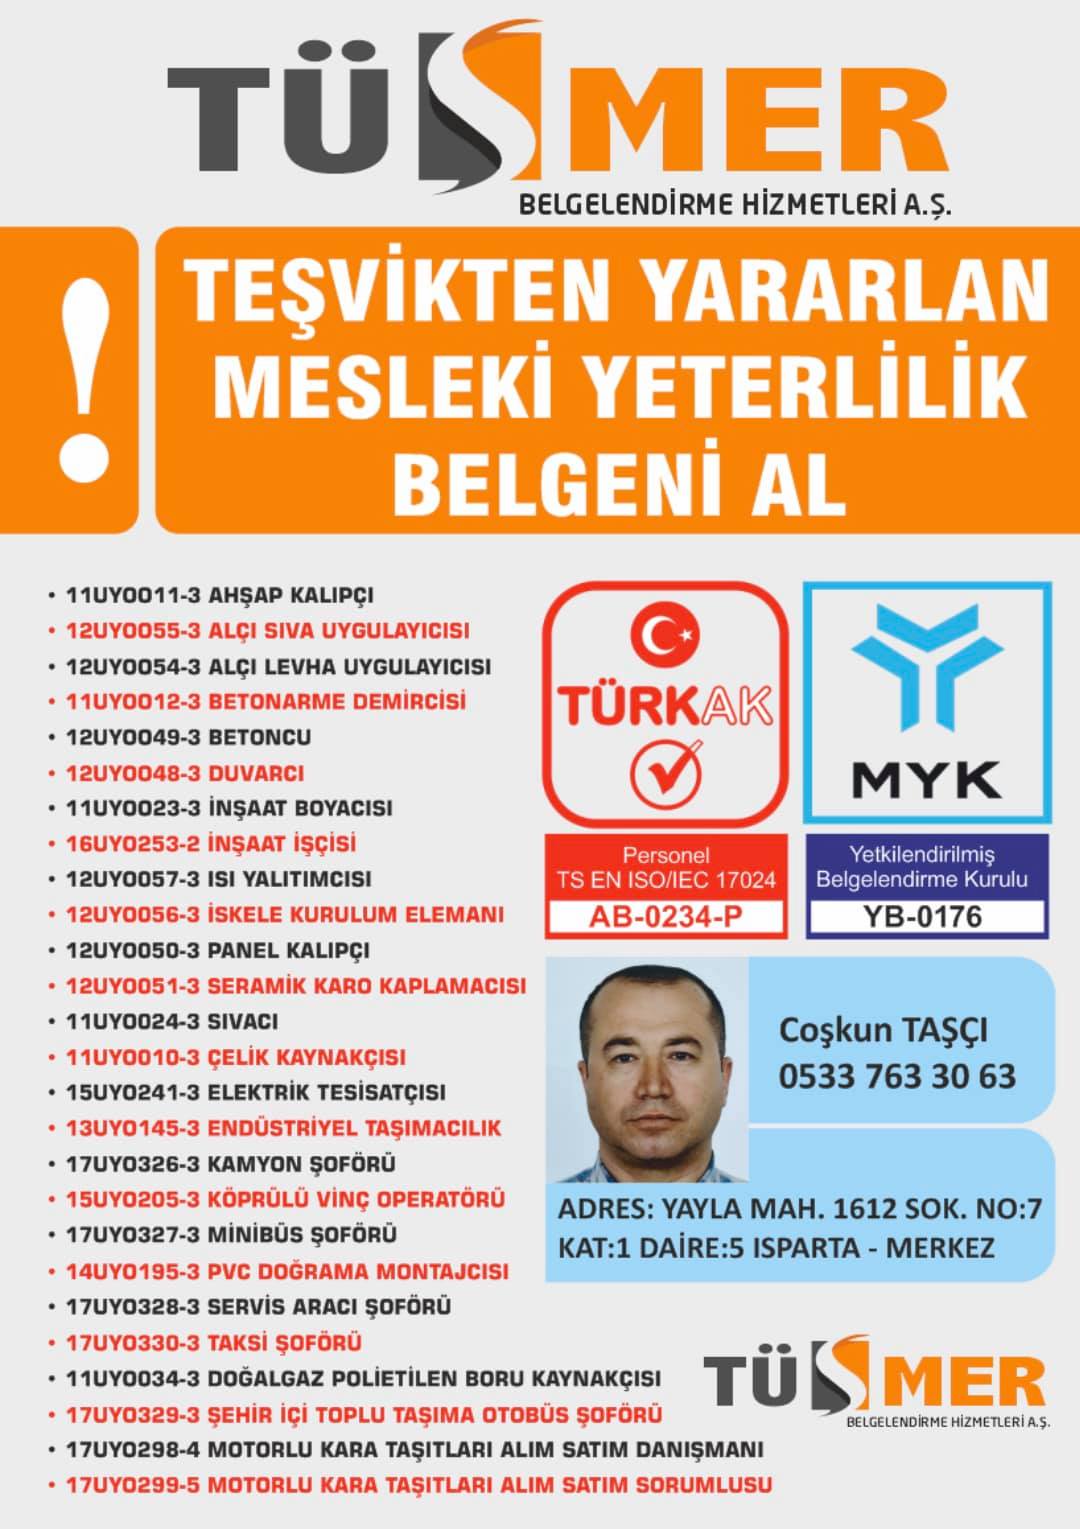 MYK MESLEKİ YETERLİLİK BELGESİ HaznedarGüngören İstanbul